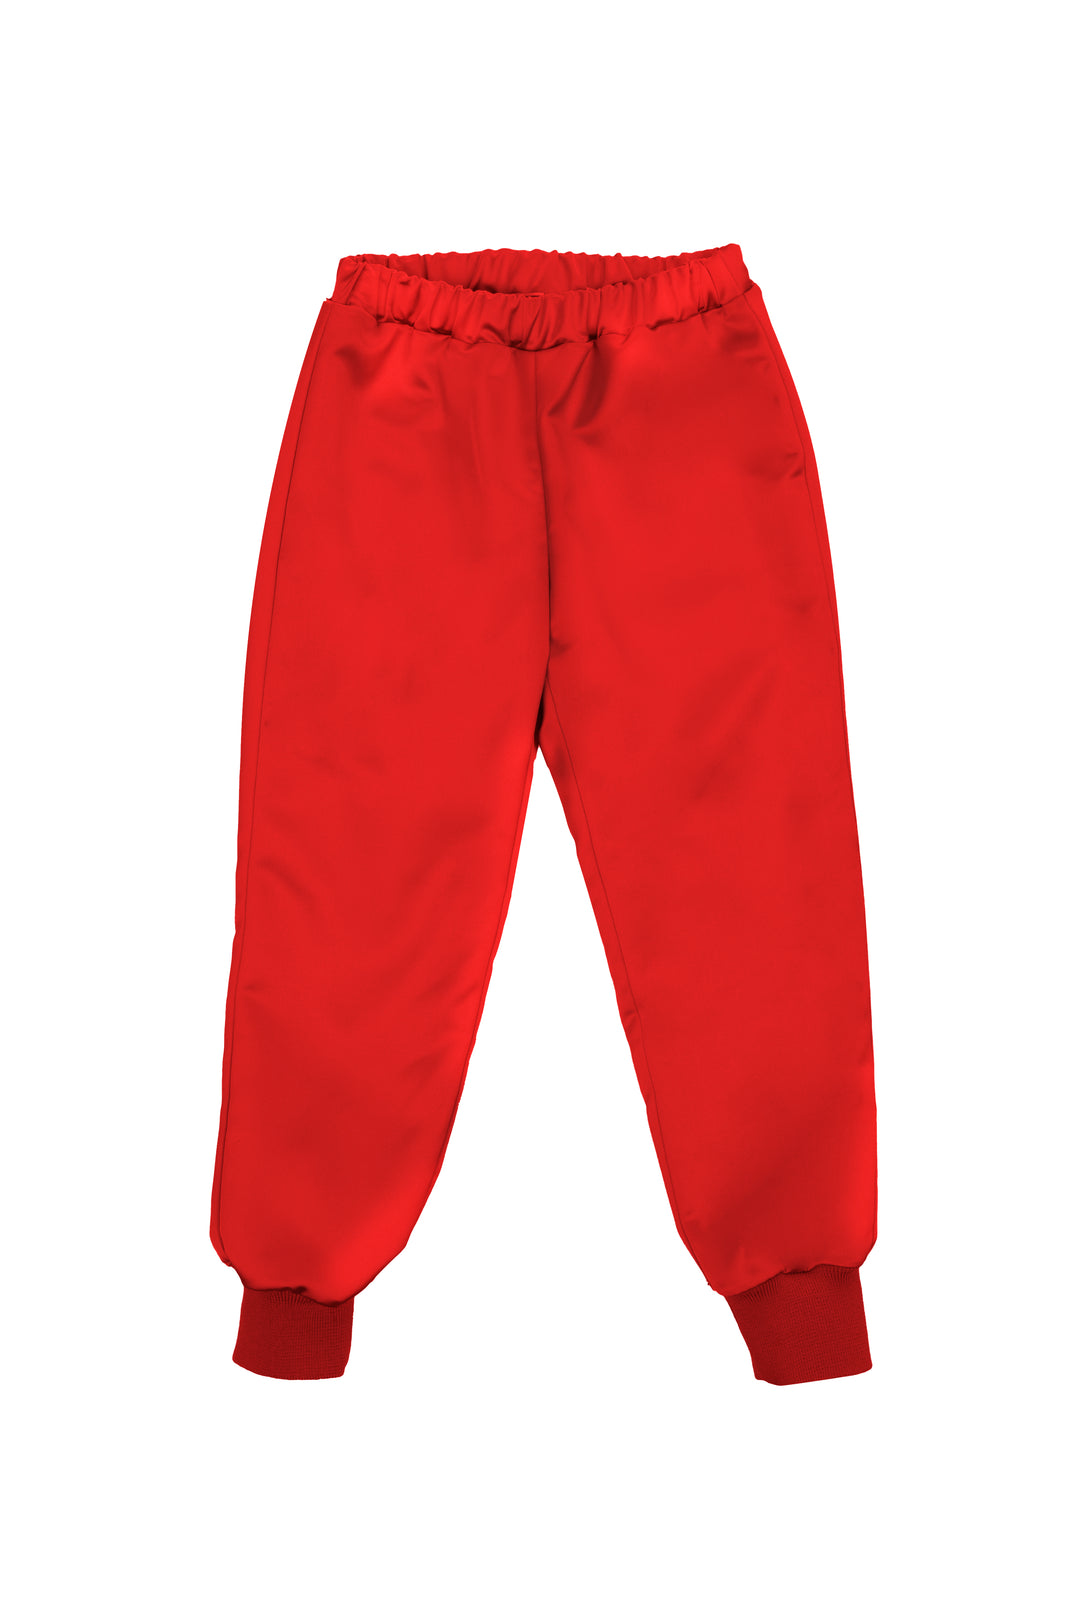 Pantalone rosso bambina,con vita e caviglie elasticizzate